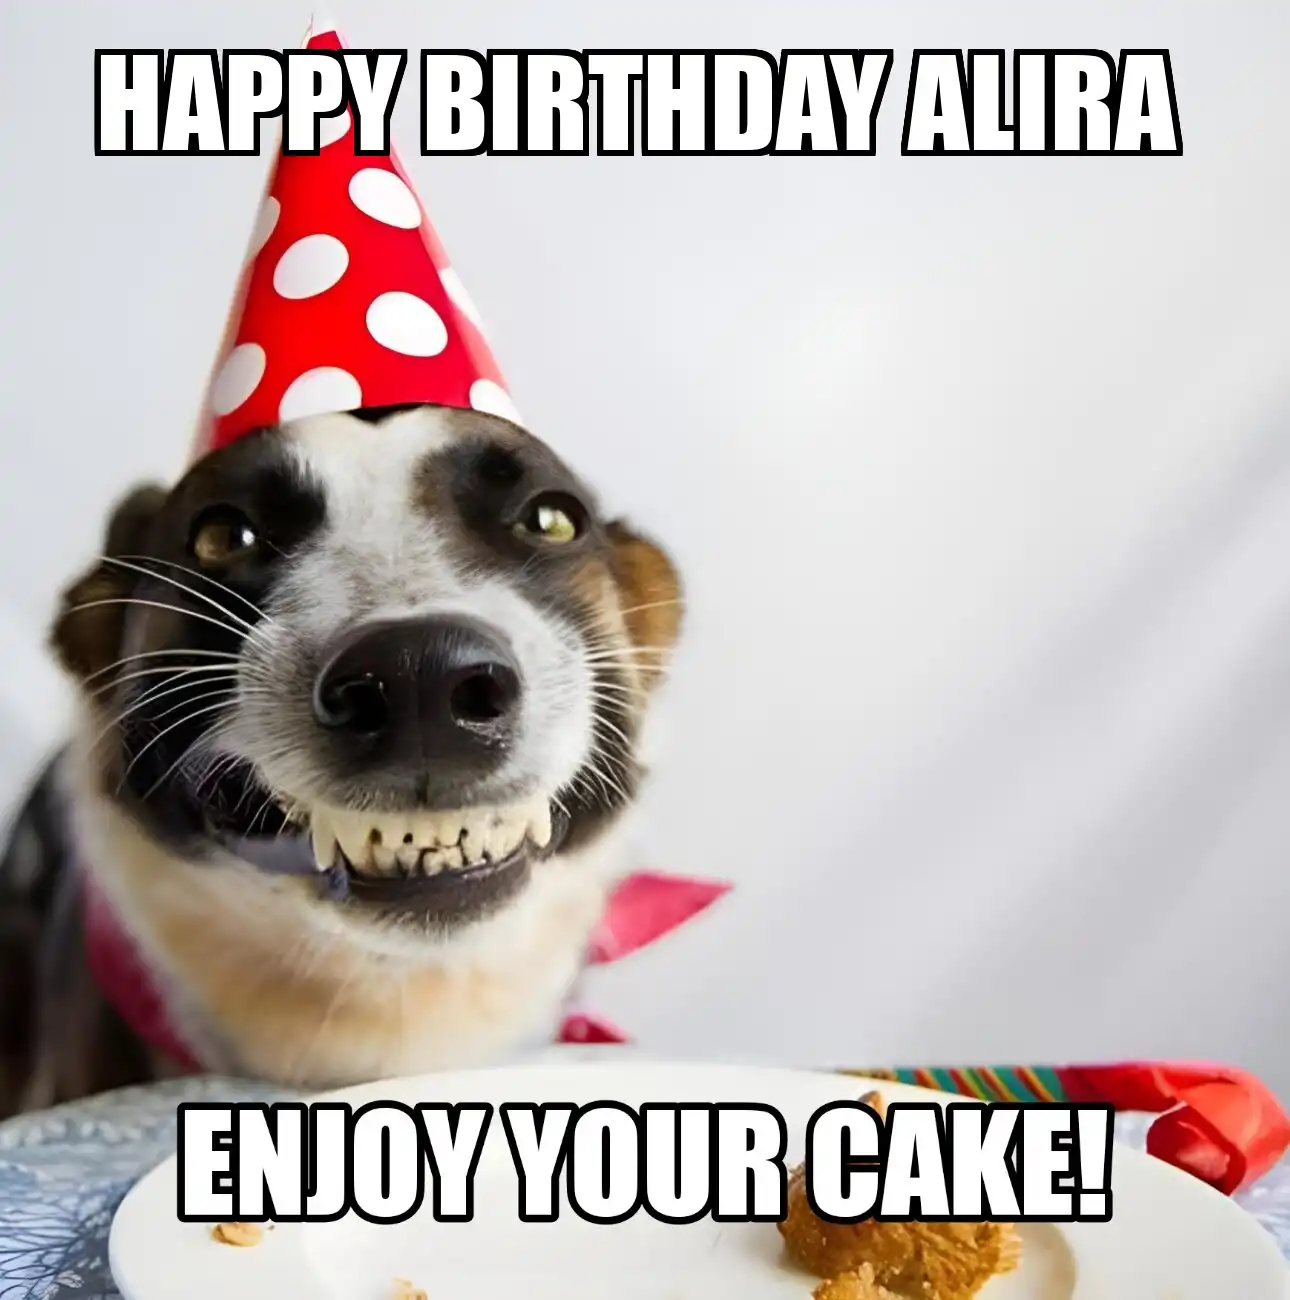 Happy Birthday Alira Enjoy Your Cake Dog Meme